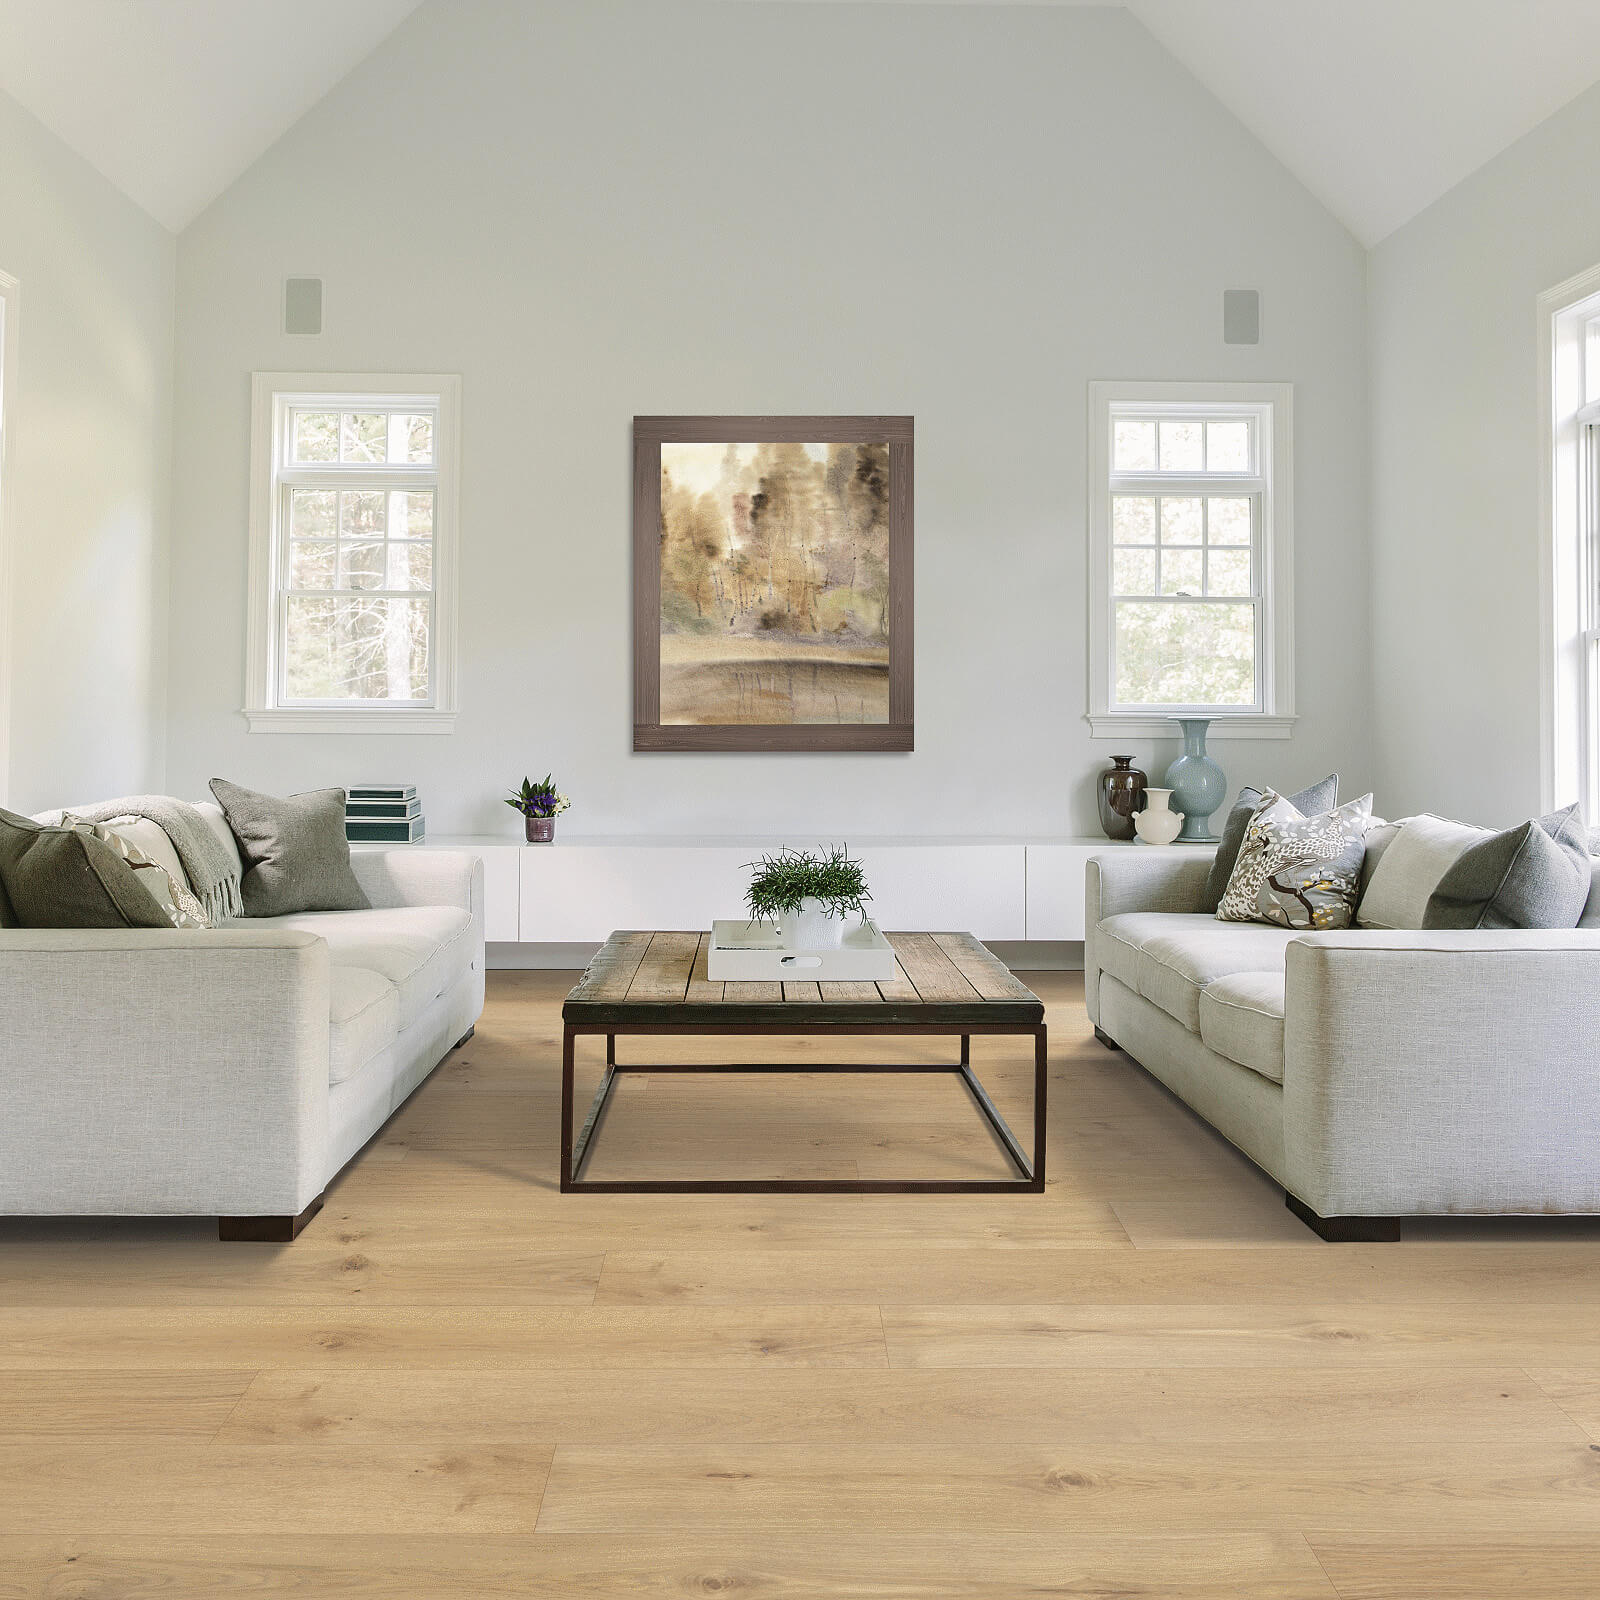 Hardwood flooring in living room | Dehart Tile